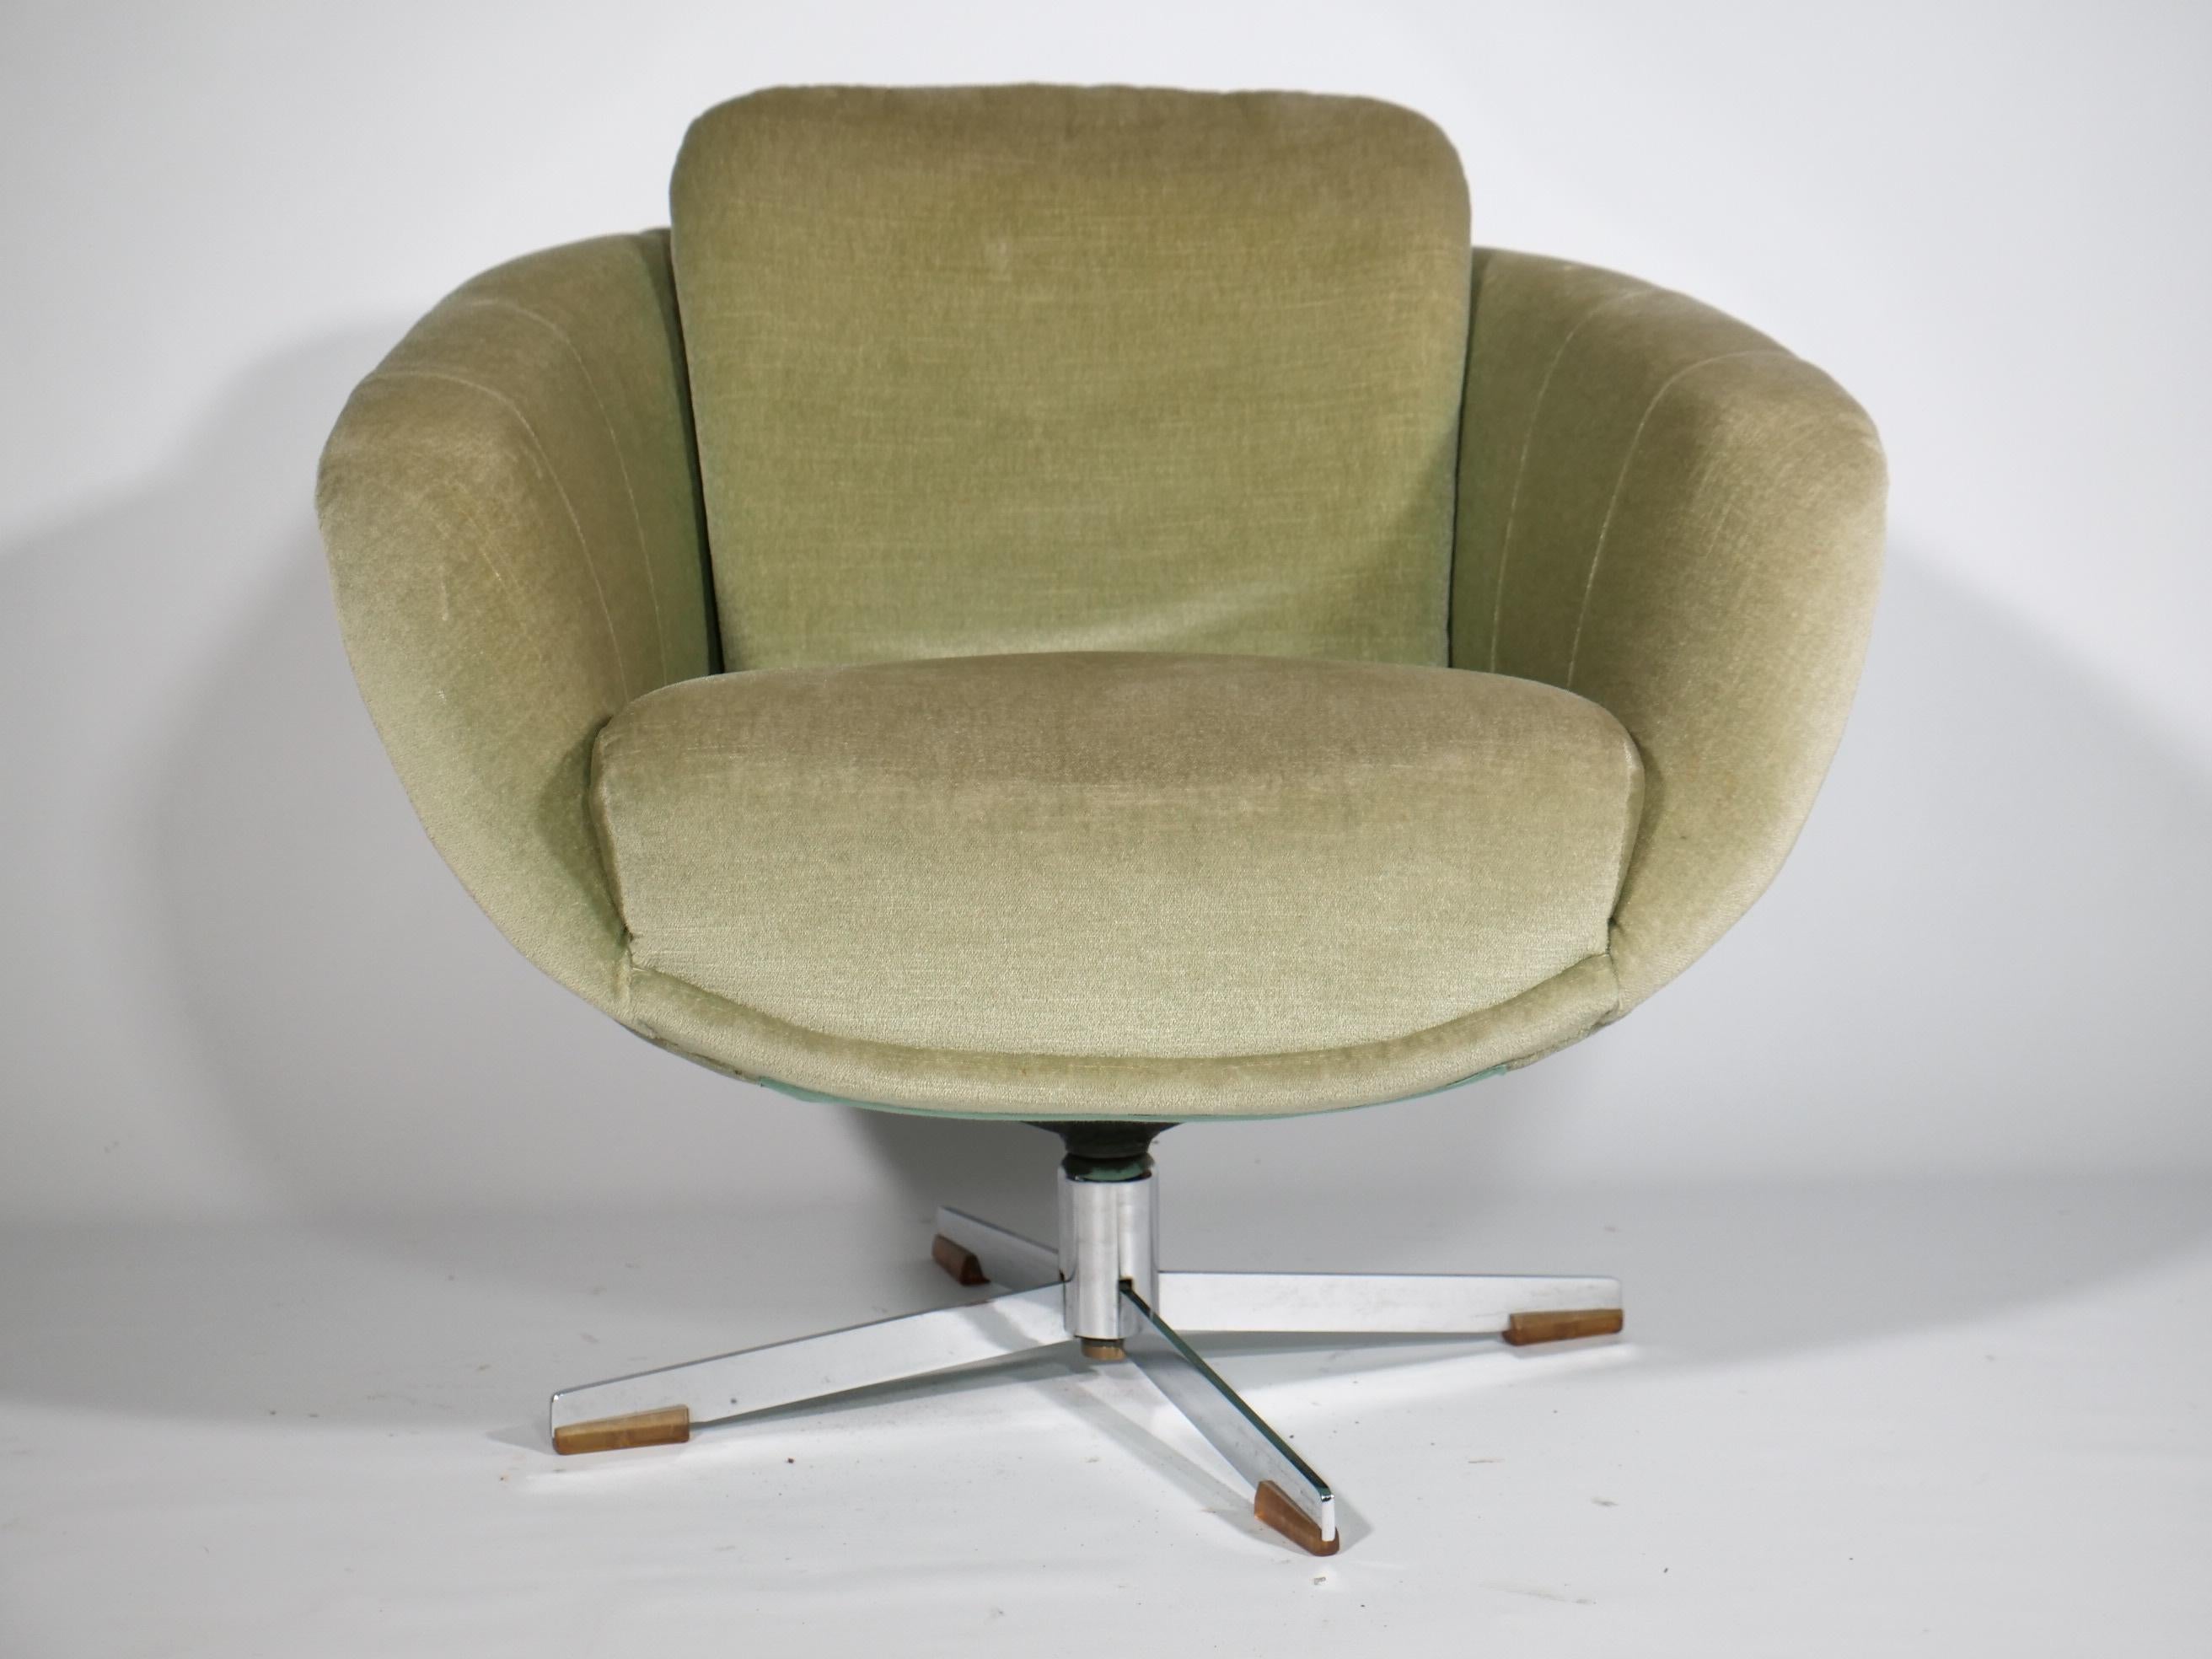 Lounge Sessel 60er 70er Jahre Design Drehsessel Mid Century Space Age 

Hellgrüne Space age Sessel original aus der Zeit – super Zustand! 

Breite: 77 cm 
Höhe: 88 cm 
Tiefe: 77 cm 
Sitzhöhe: 45 cm 